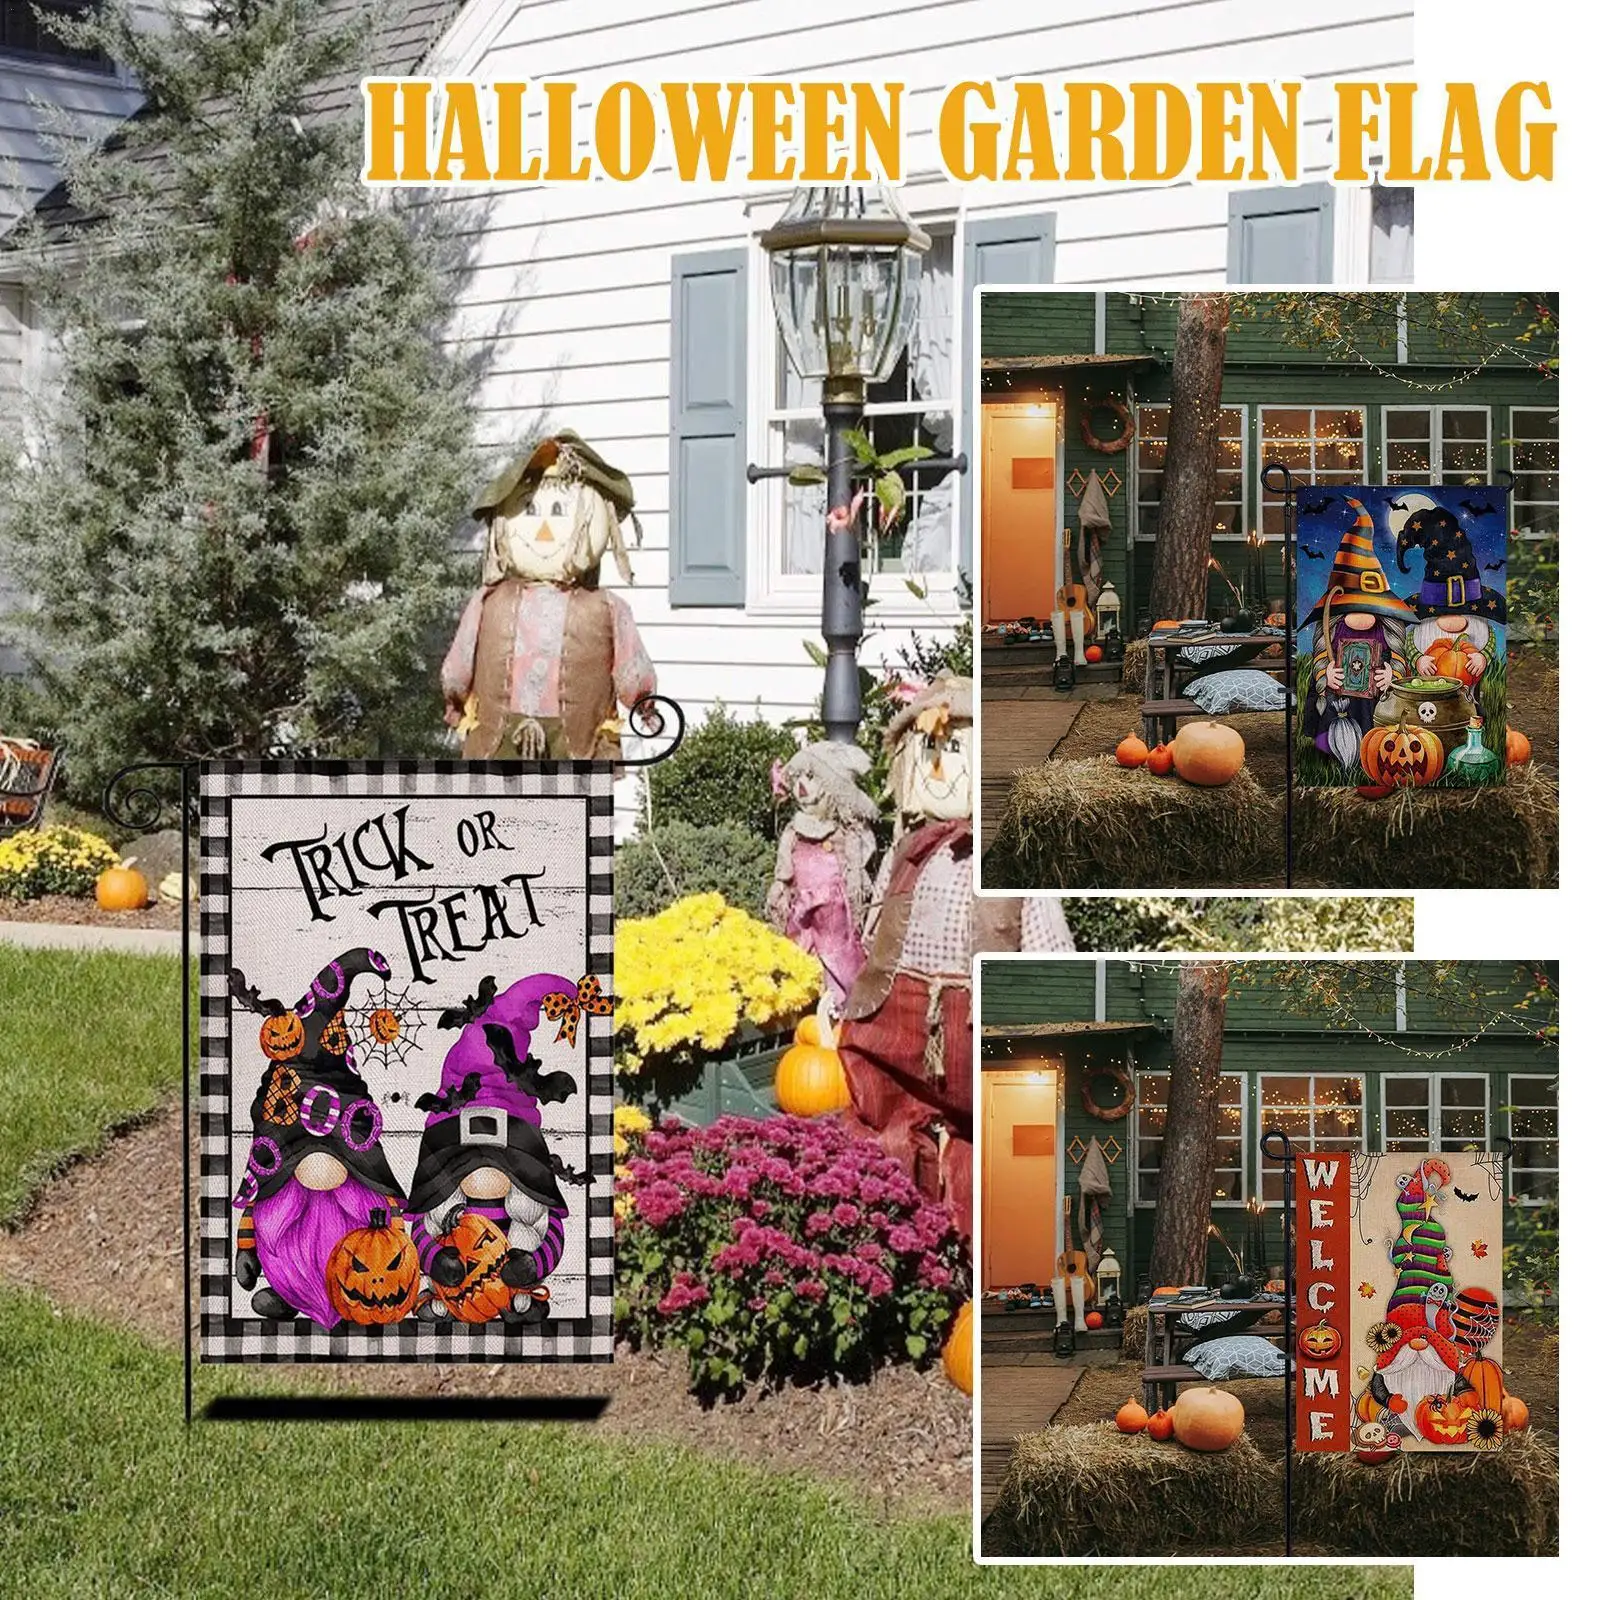 

Украшение на Хэллоуин, композиция, Садовый флаг, праздничная садовая атмосфера I8y0